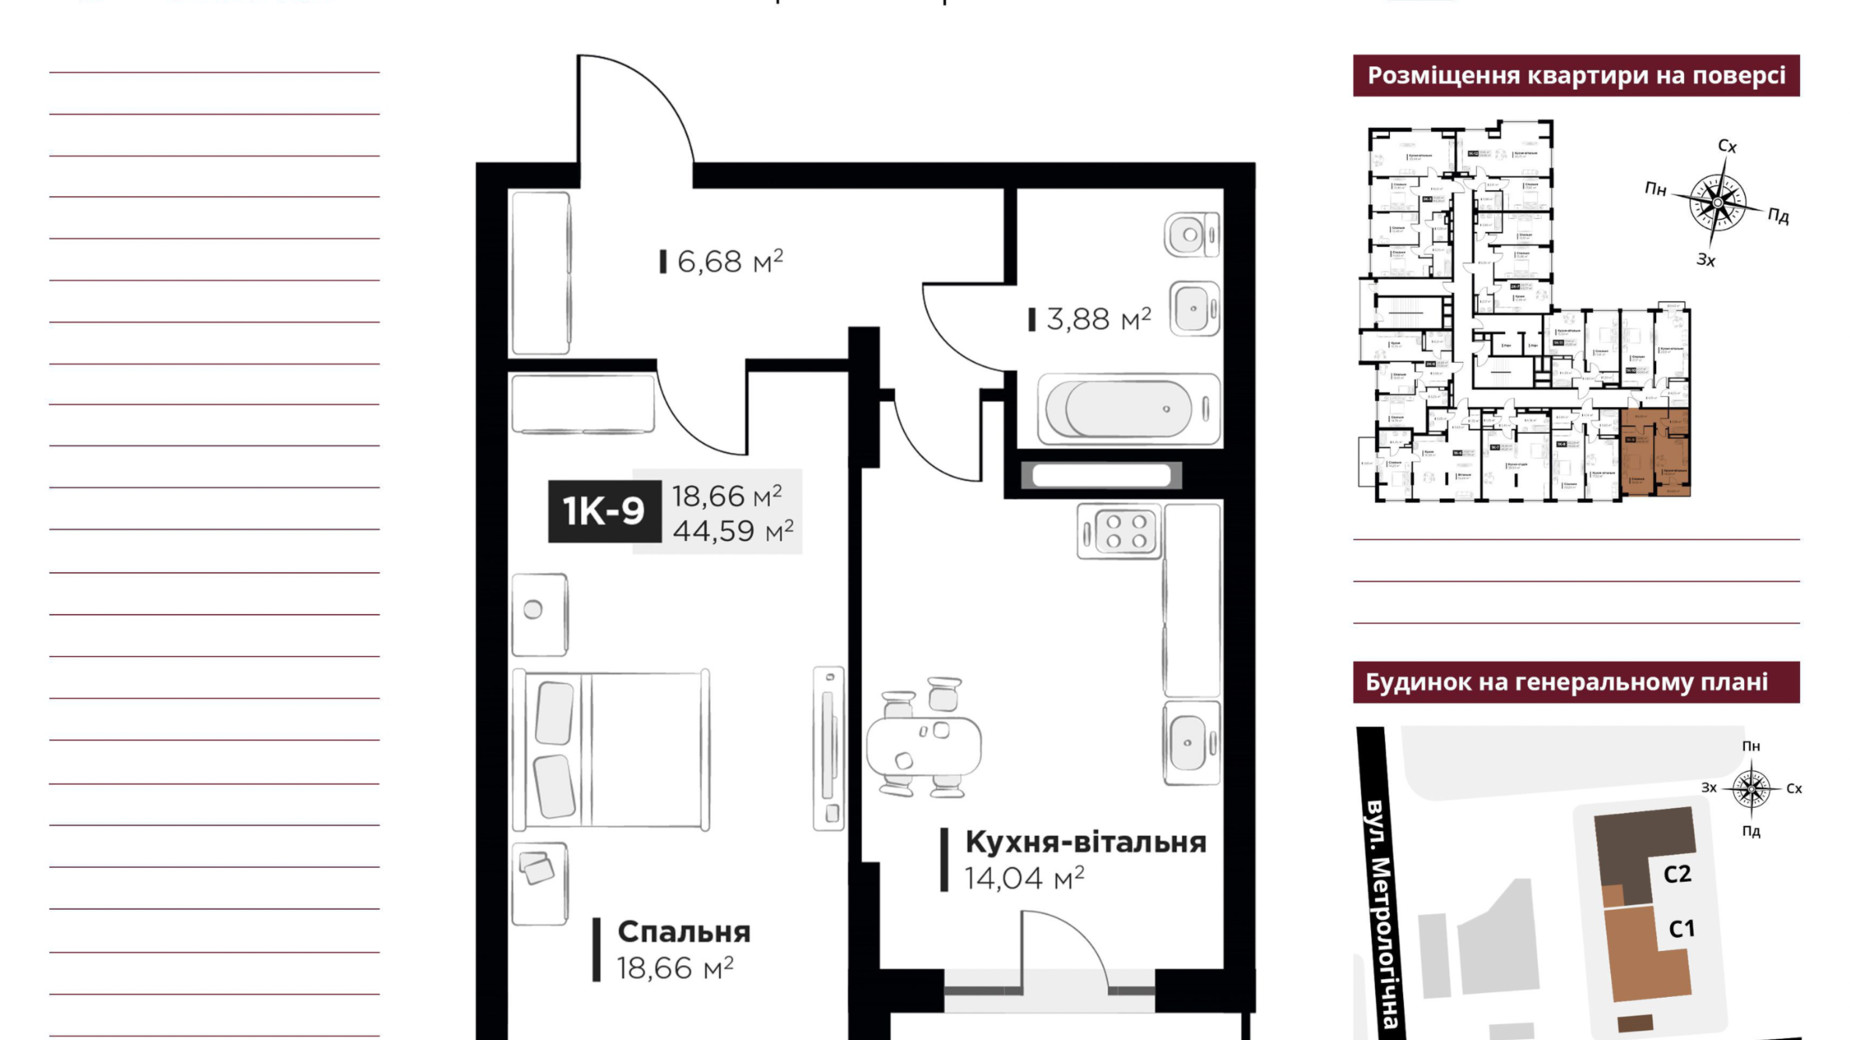 Планировка 1-комнатной квартиры в ЖК Life Story 44.59 м², фото 651125